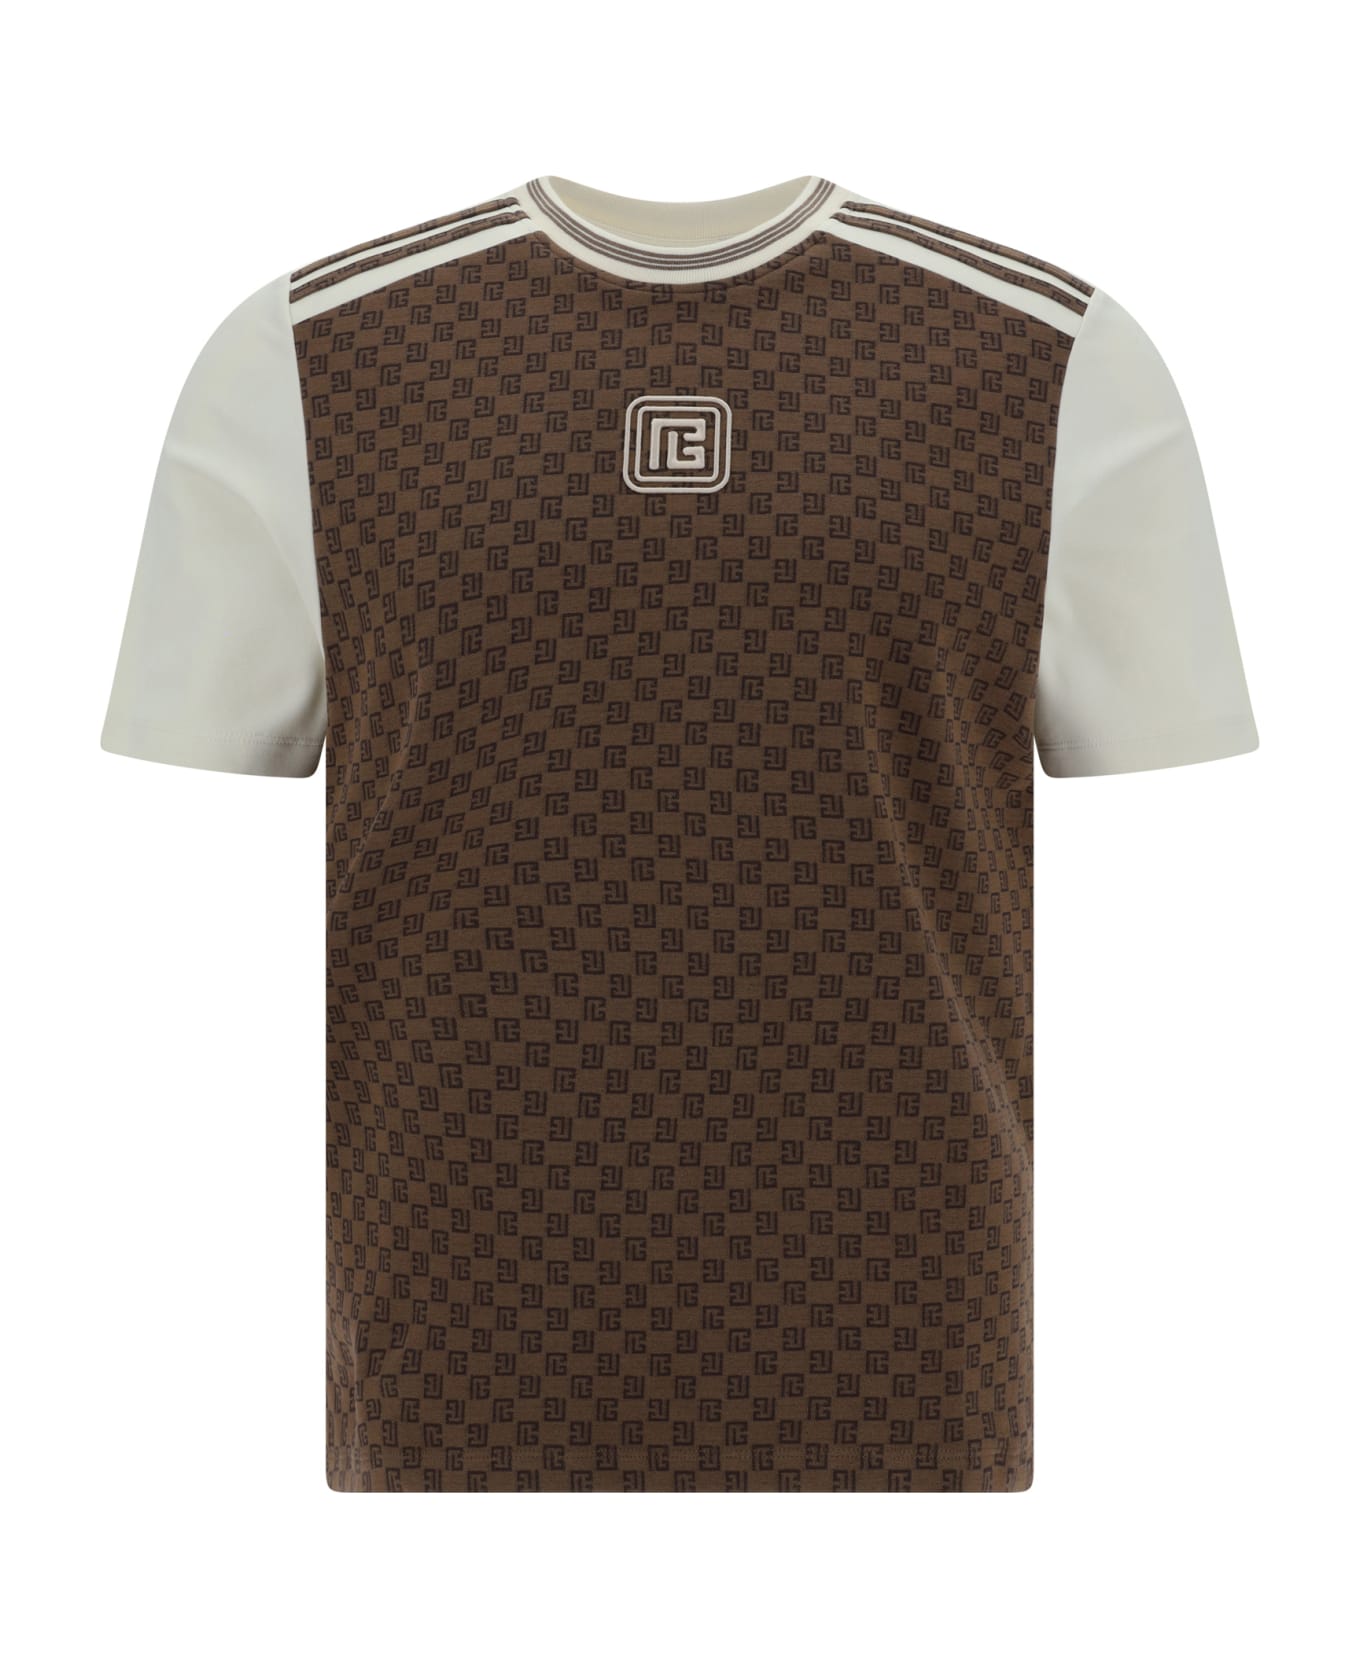 Balmain T-shirt - Marron/marron foncè/creme シャツ